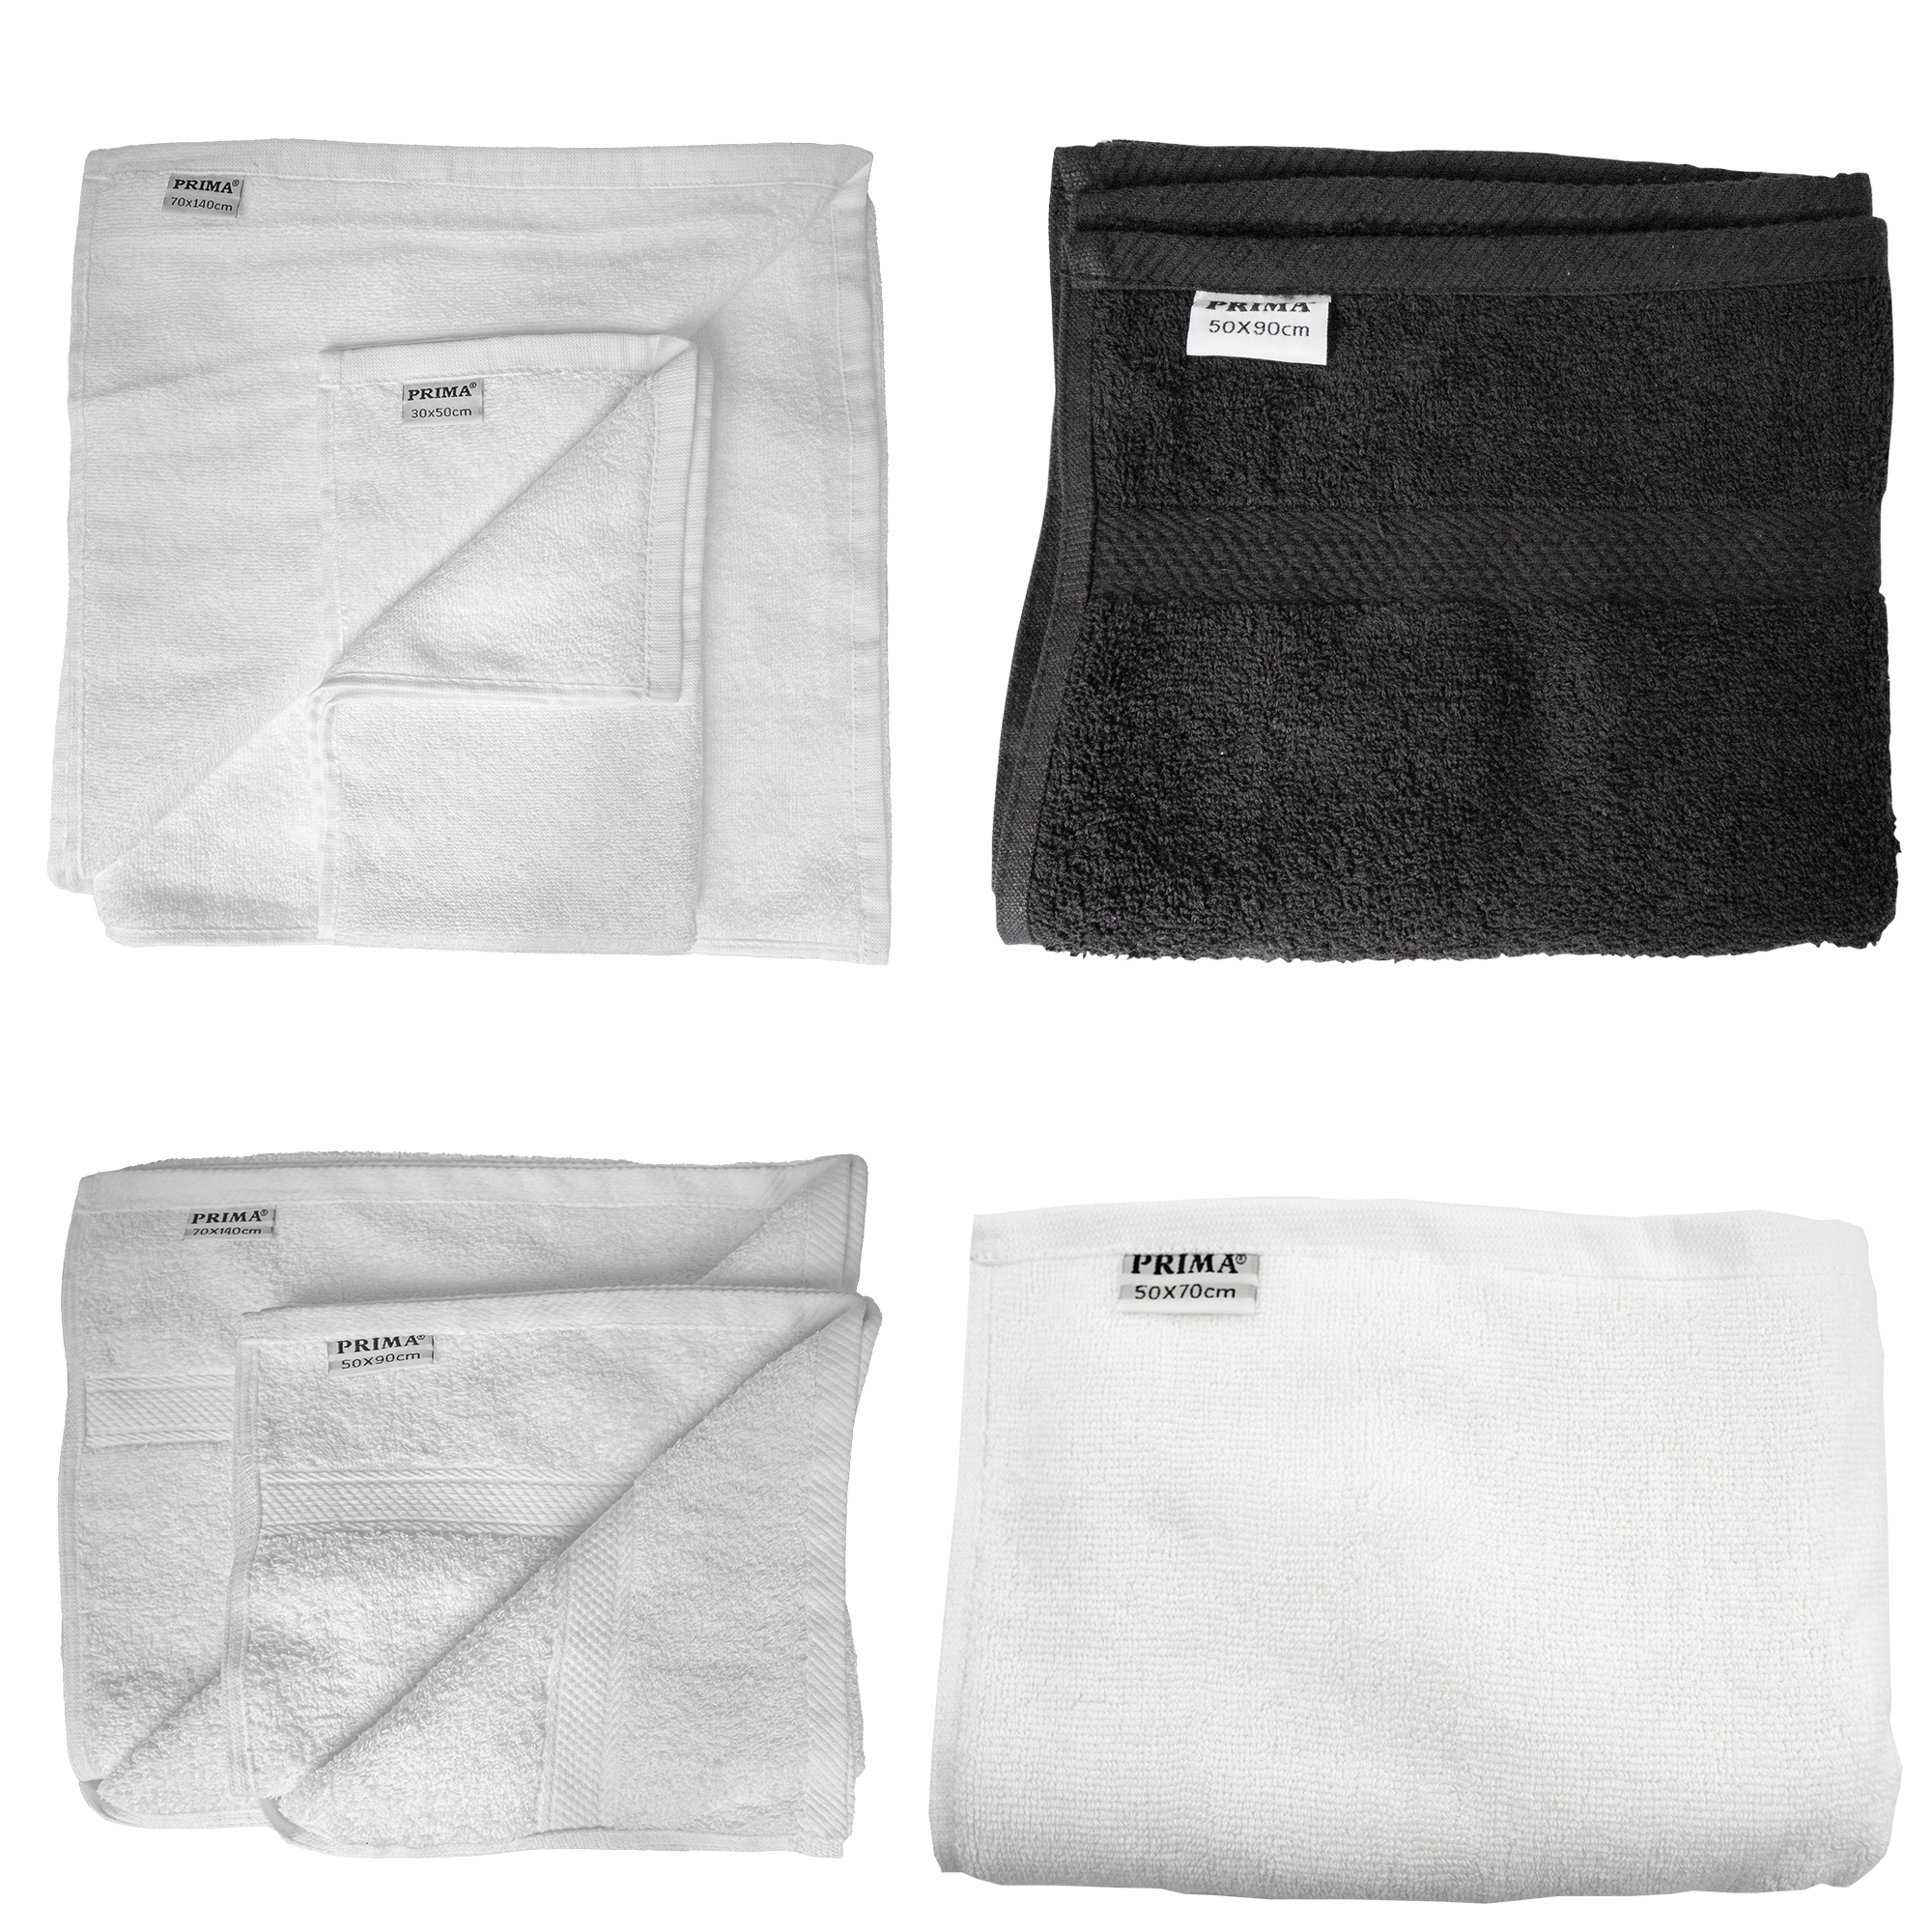 Horeca/TOWELS AND BATHROBES/Towels